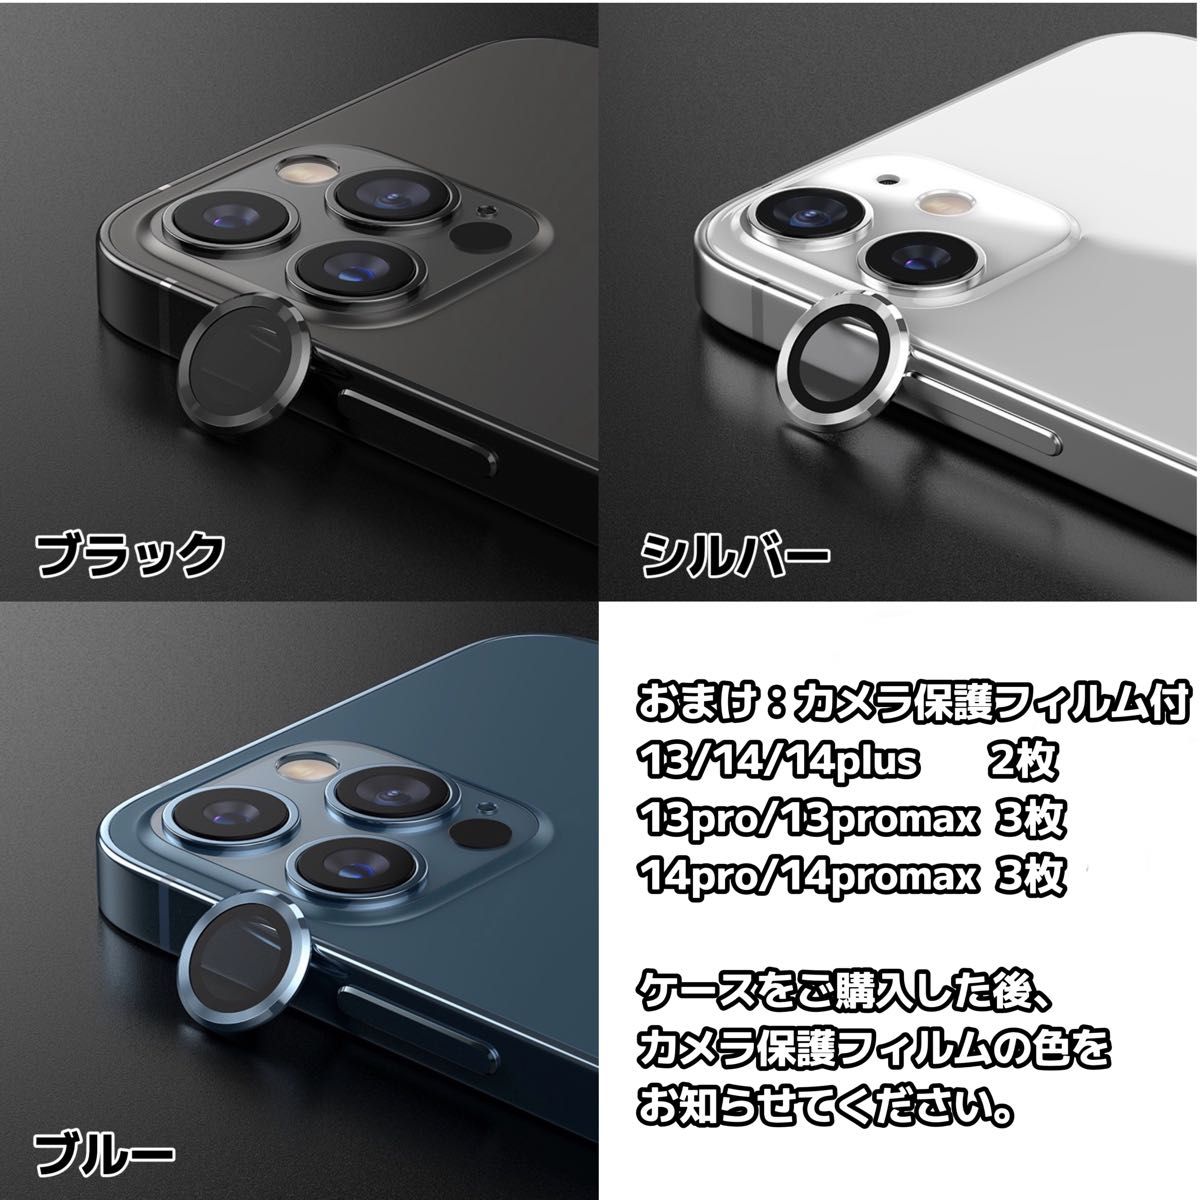 iPhone13pro ケース マグセーフ カバー 新品 MagSafe対応 耐衝撃 指紋防止 スマホカメラ保護フィルム3枚付